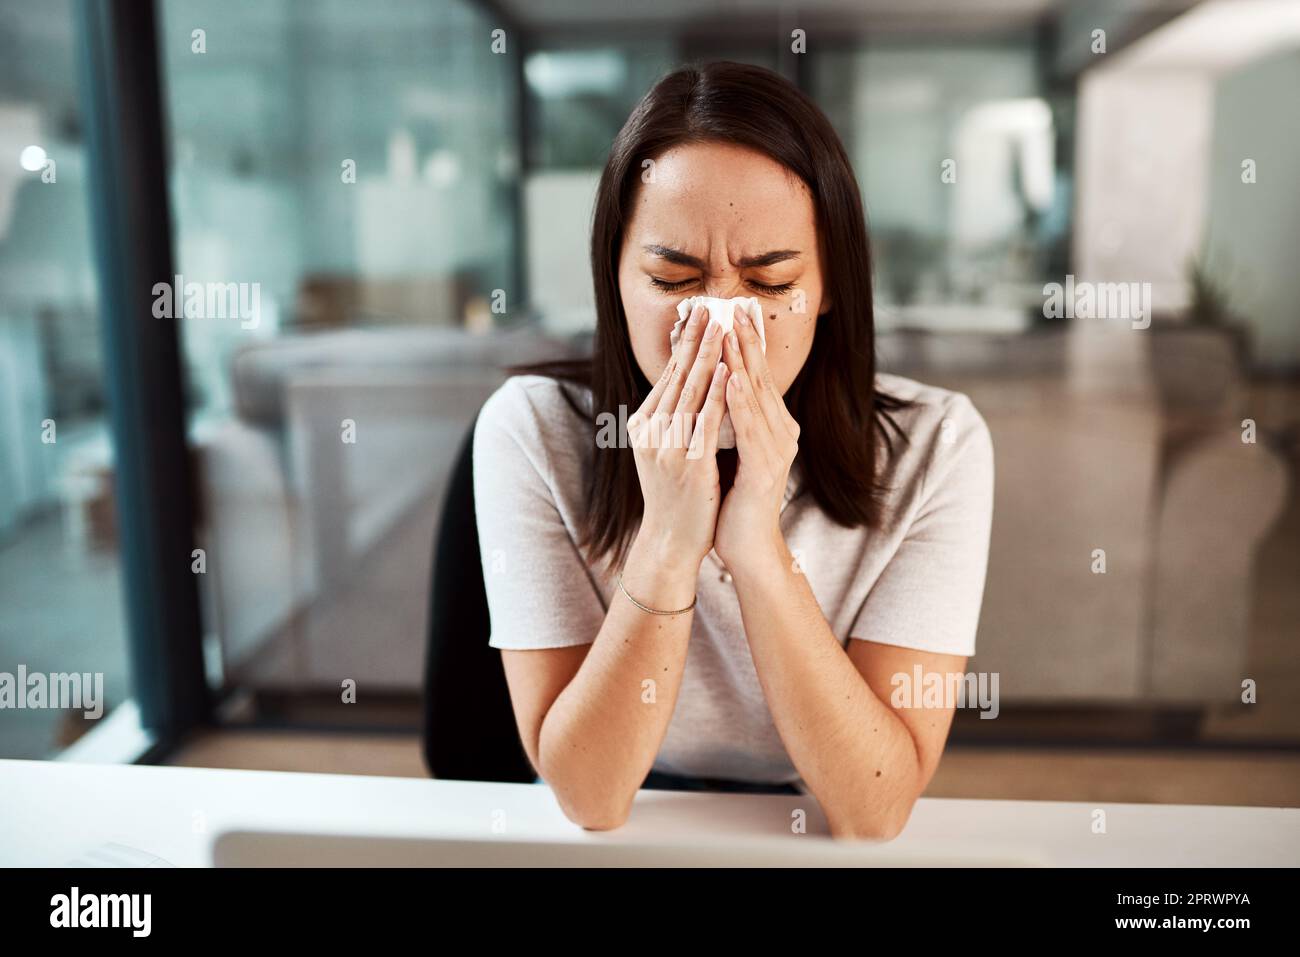 Der Umgang mit einer stickigen und laufenden Nase. Eine junge Geschäftsfrau bläst ihre Nase, während sie in einem Büro arbeitet. Stockfoto